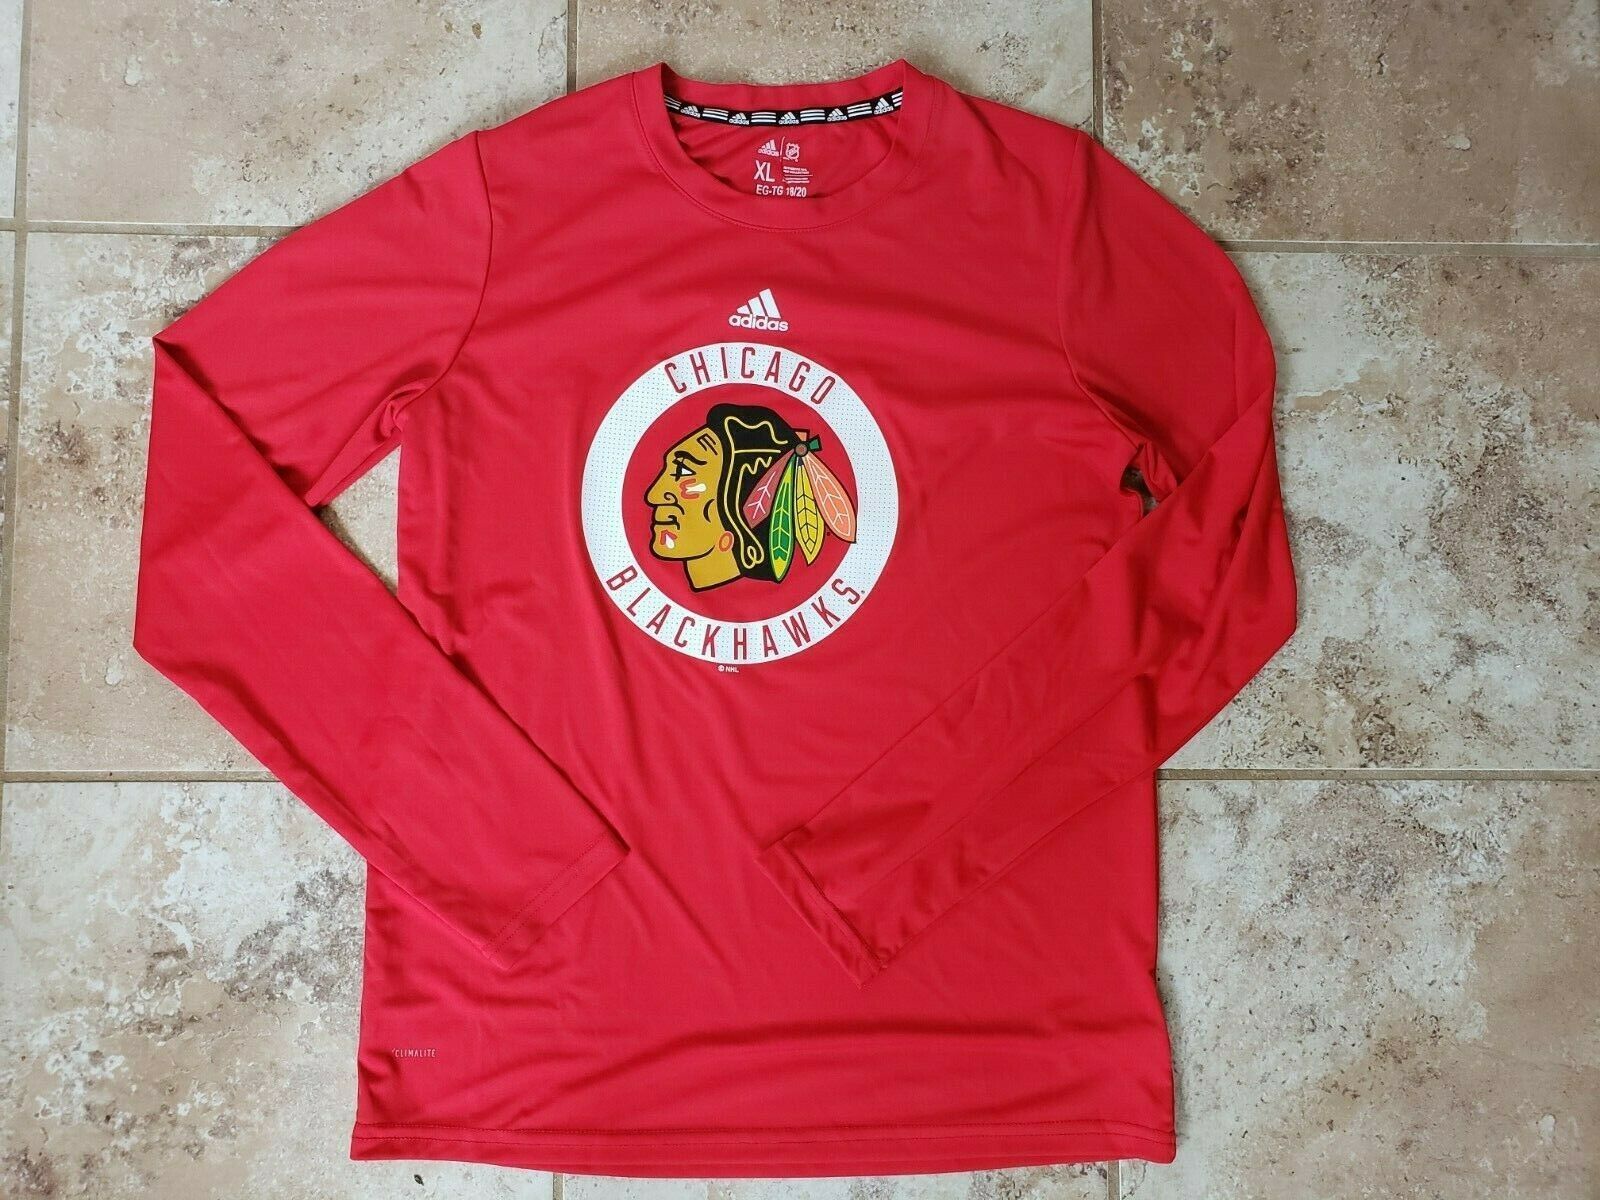 Buy the NWT Womens Black Chicago Blackhawks Short Sleeve Hockey T-Shirt  Size Large